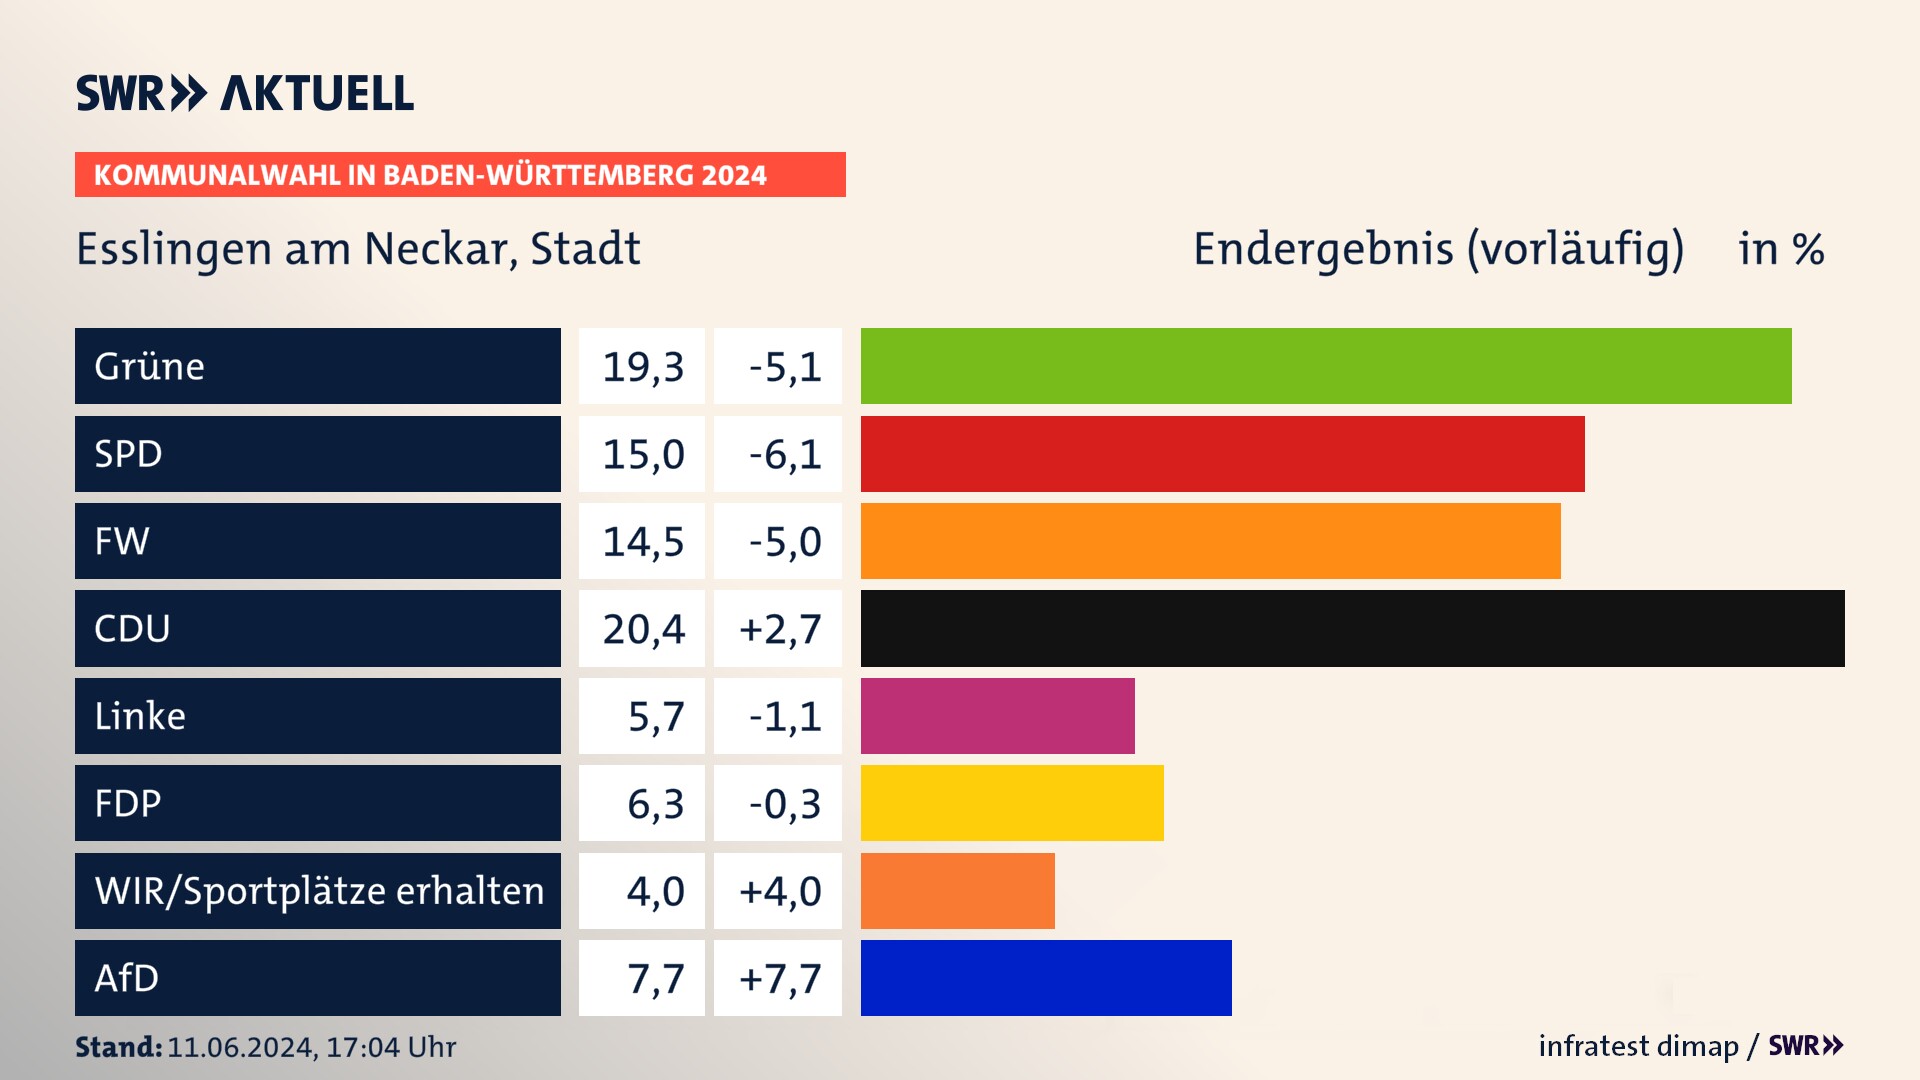 Kommunalwahl 2024 Vorlaeufigesendergebnis Zweitstimme für Esslingen am Neckar. In Esslingen am Neckar, Stadt erzielen die Grünen 19,3 Prozent der gültigen  Stimmen. Die SPD landet bei 15,0 Prozent. Der Wahlvorschlag FW erreicht 14,5 Prozent. Die CDU kommt auf 20,4 Prozent. Die FDP landet bei 6,3 Prozent. Die AfD erreicht 7,7 Prozent.